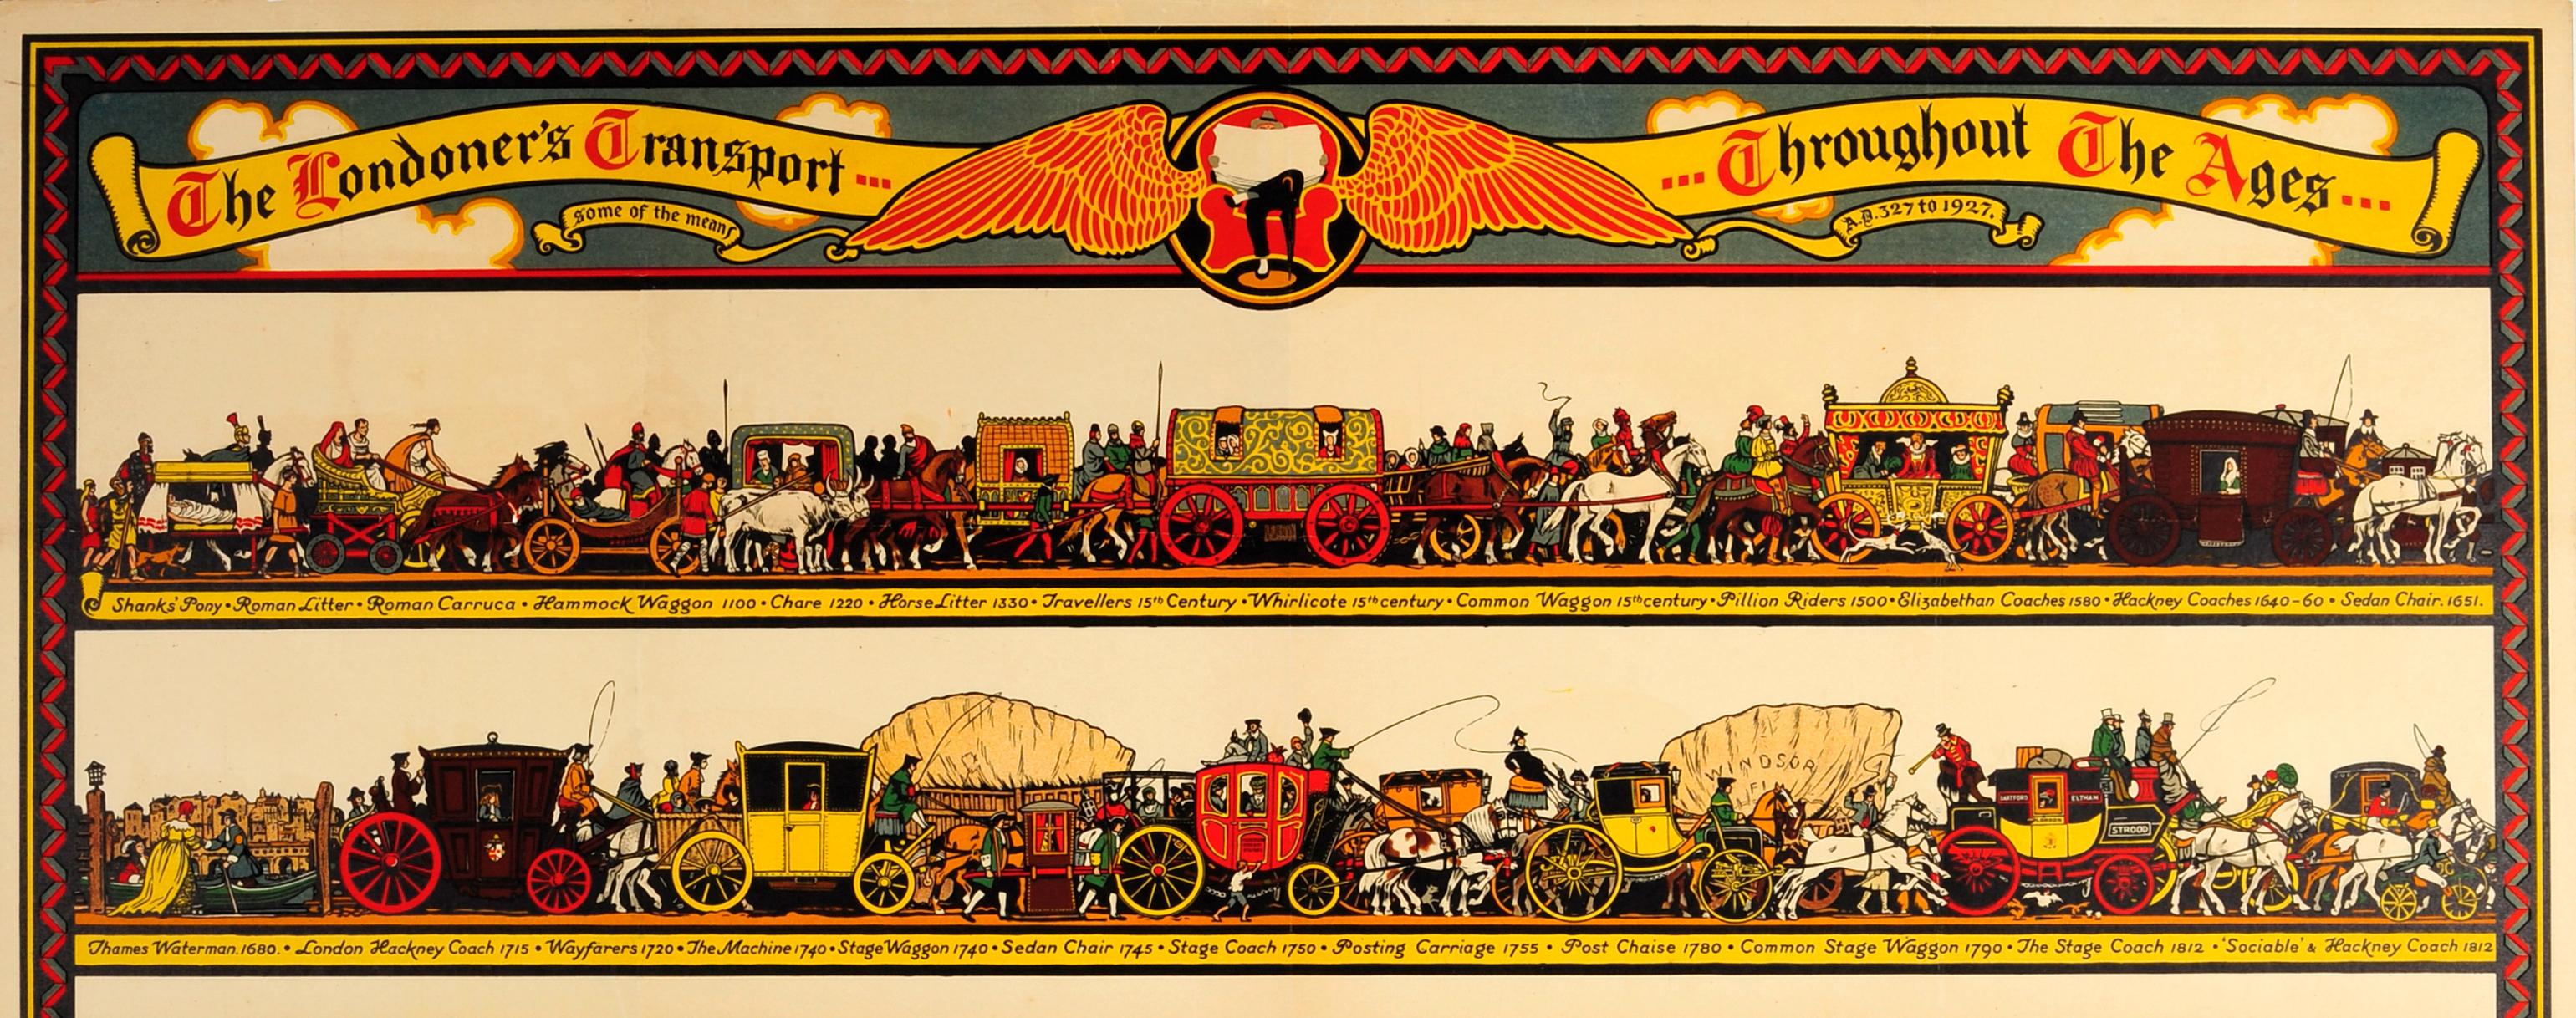 Original-Werbeplakat für die öffentlichen Verkehrsmittel London Overground und London Underground - The Londoner's Transport Throughout the Ages - von dem bekannten Künstler und Plakatgestalter Richard T. Cooper (1884-1957), der von 1924 bis 1935